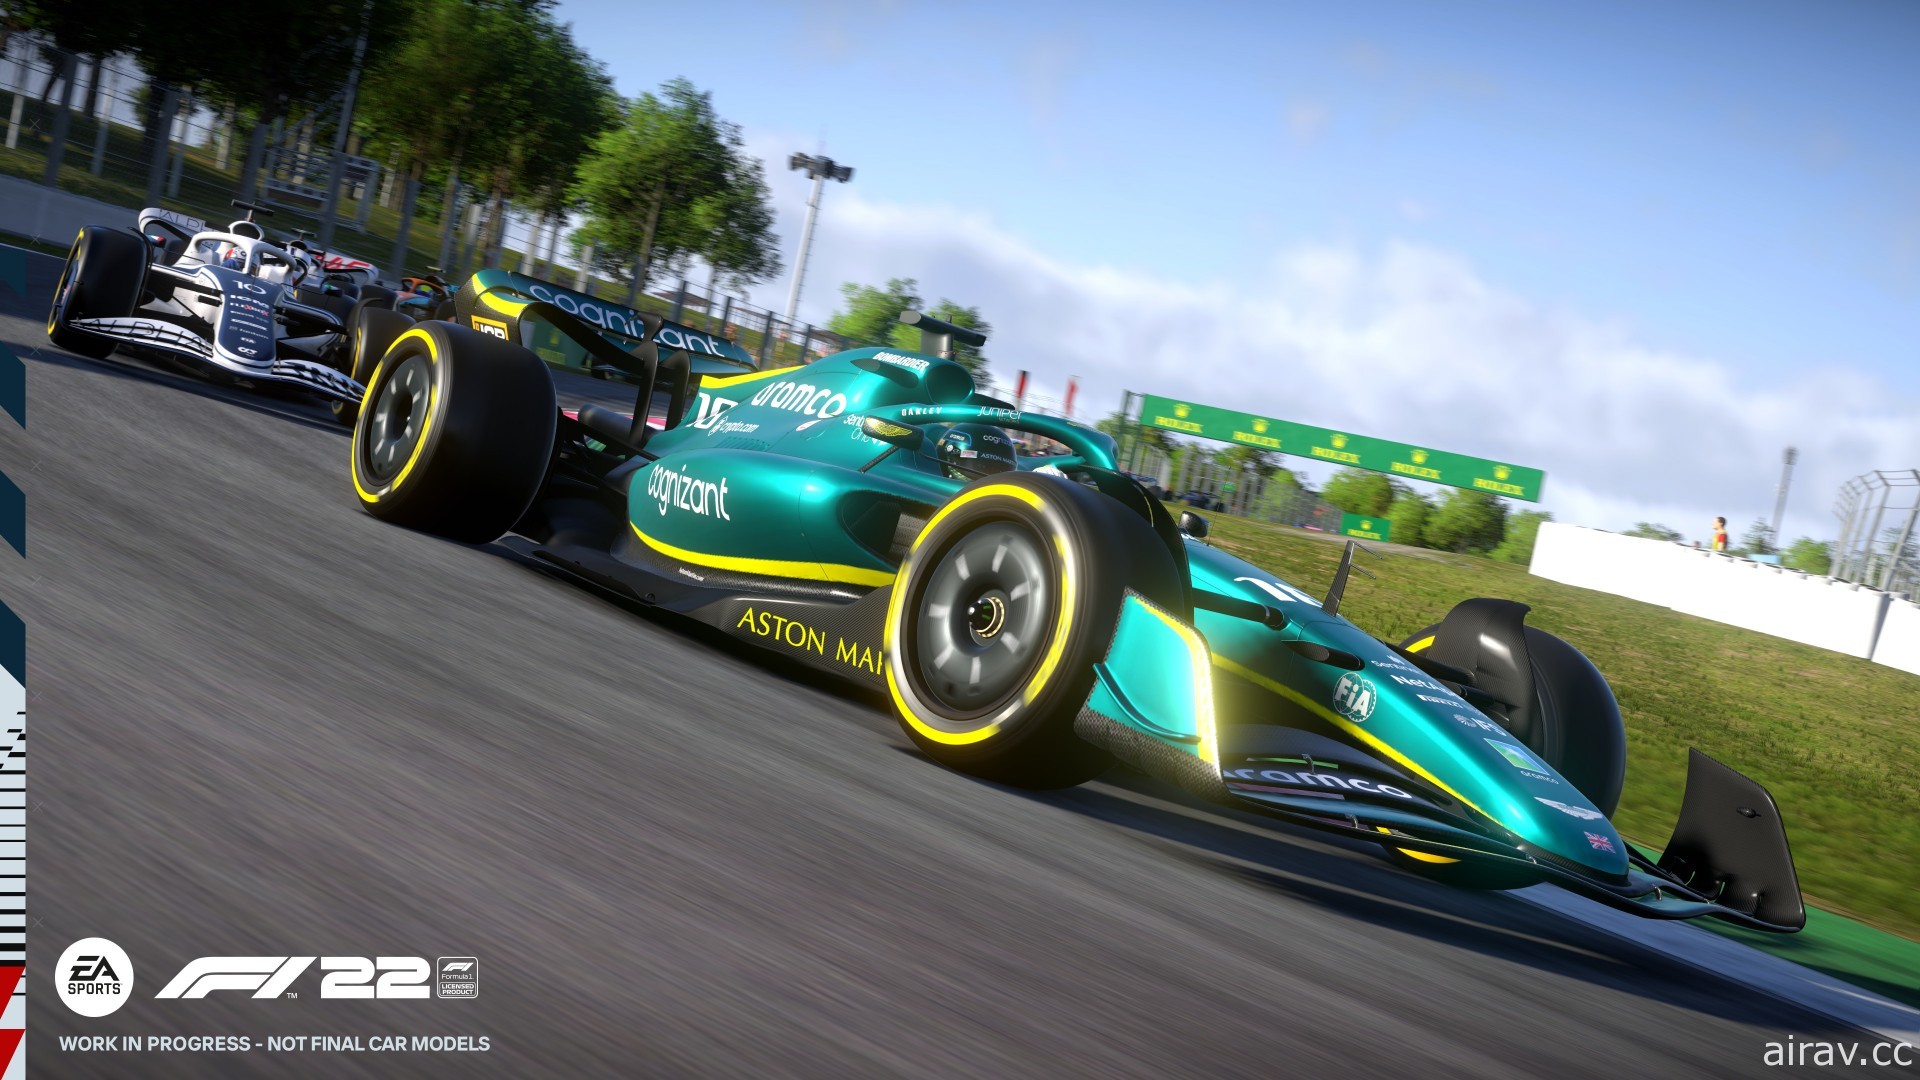 駕車衝入新時代！《F1》最新作《F1 22》確定 7 月登場 支援 VR 虛擬實境功能